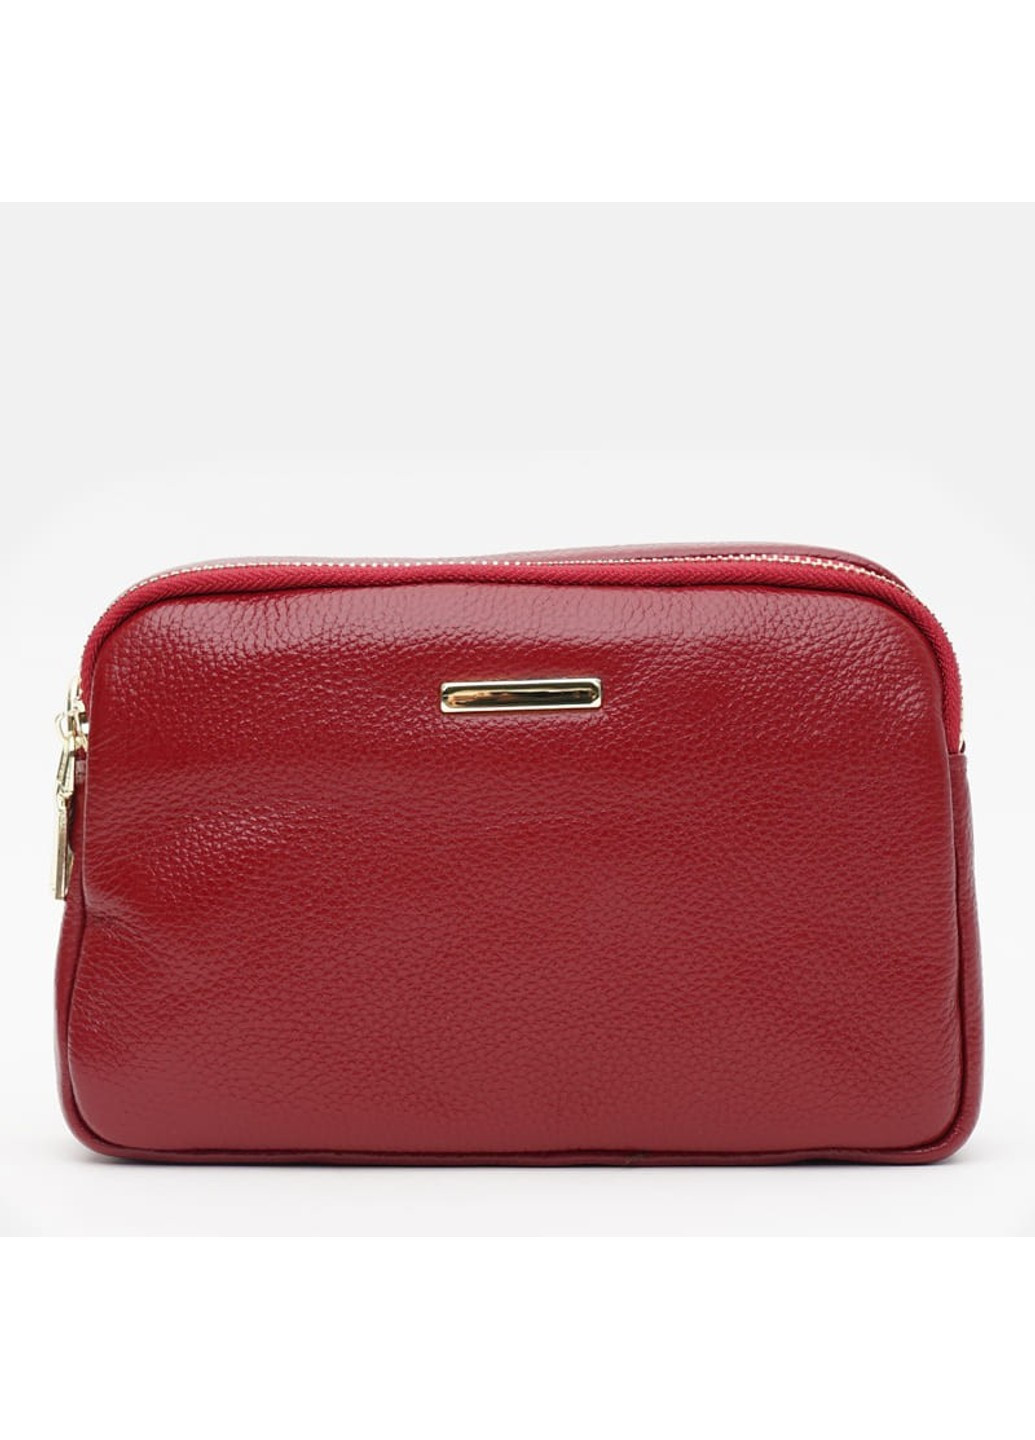 Женская кожаная сумка K11906r-red Borsa Leather (266143294)